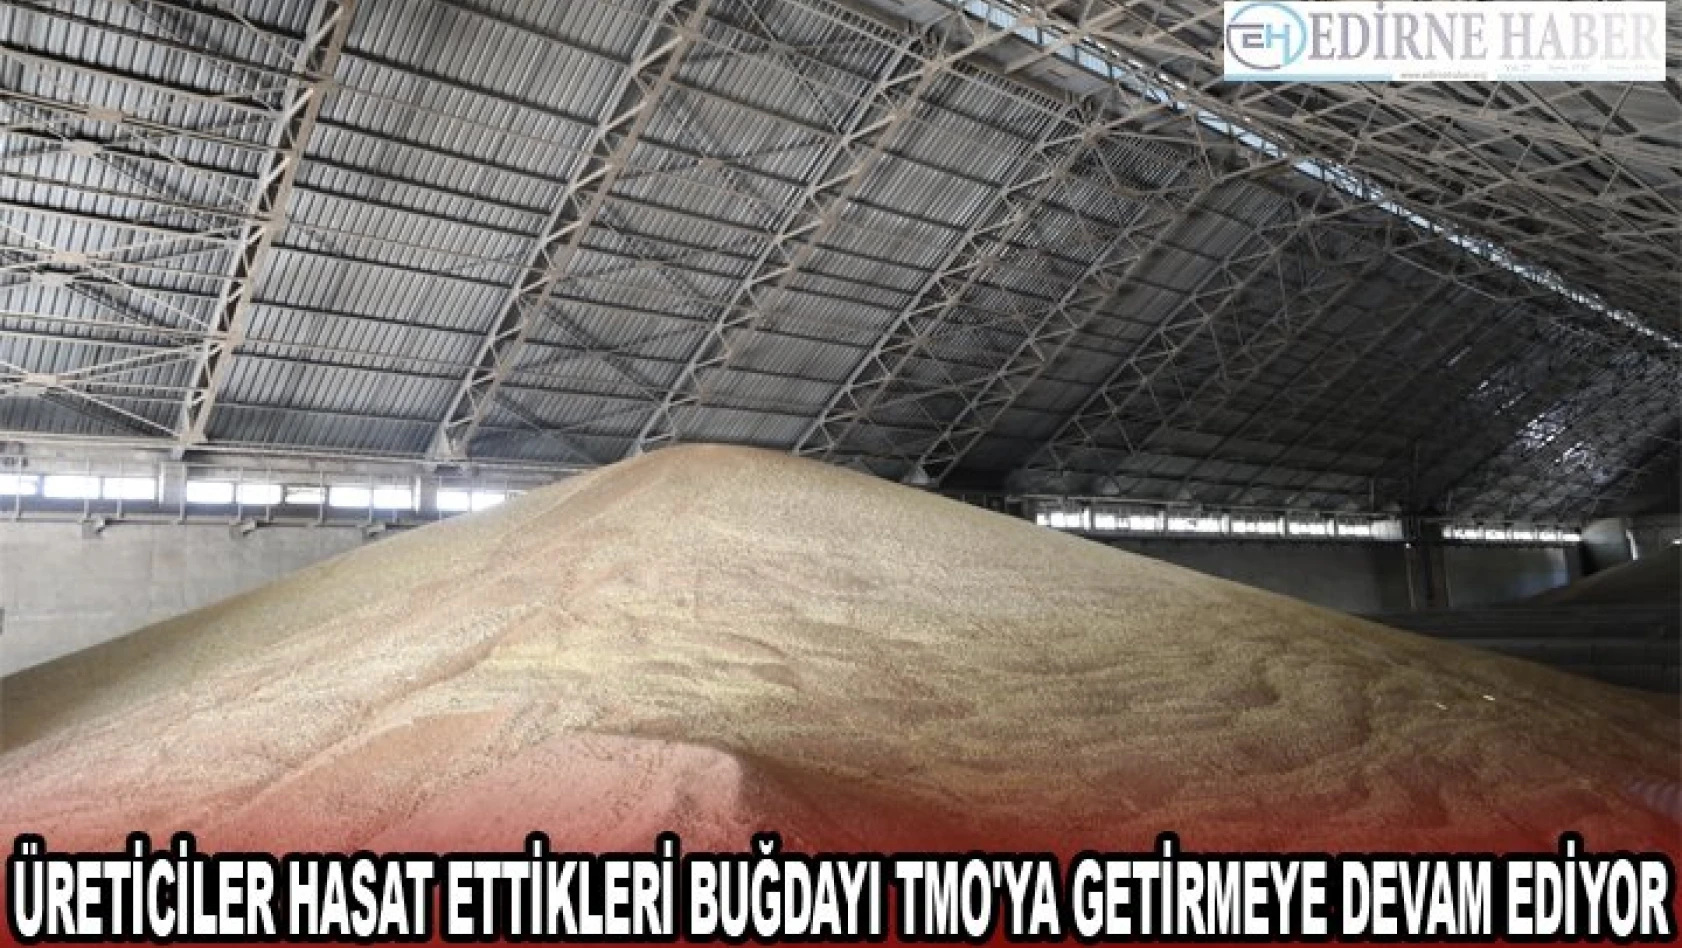 Edirne'de üreticiler hasat ettikleri buğdayı TMO'ya getirmeye devam ediyor